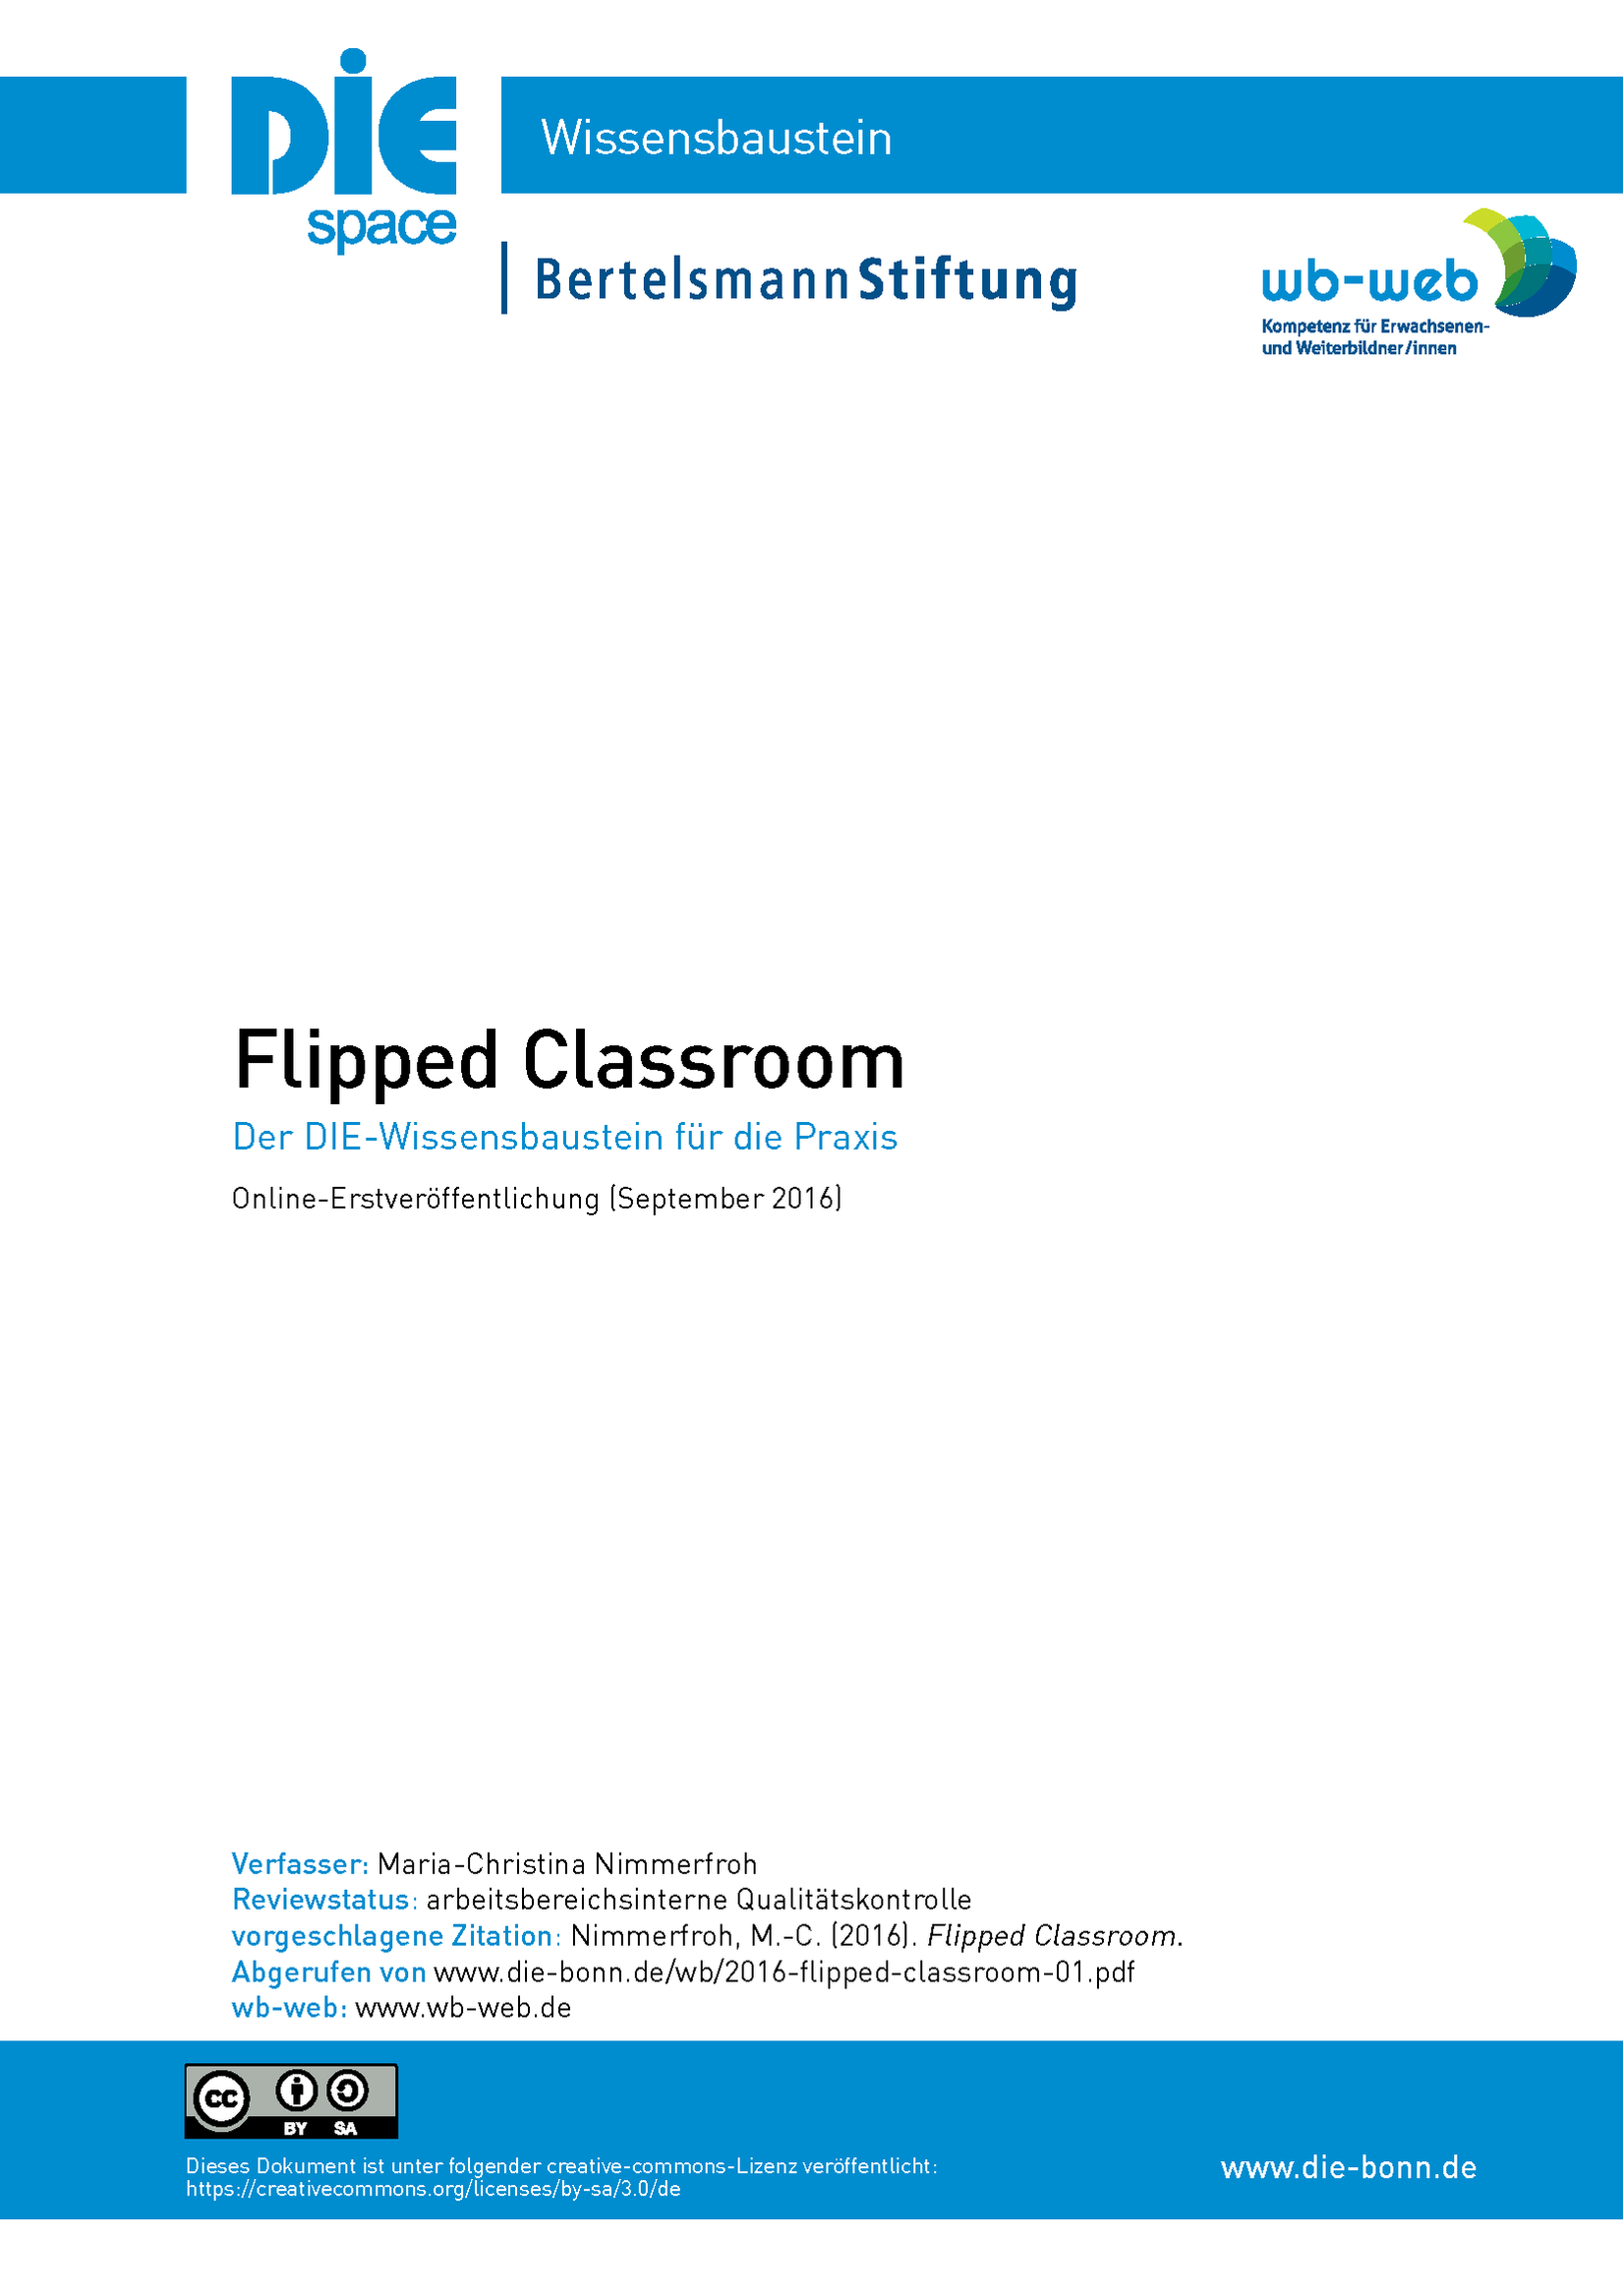 Screenshot der Titelseite des Wissensbausteins Flipped Classroom